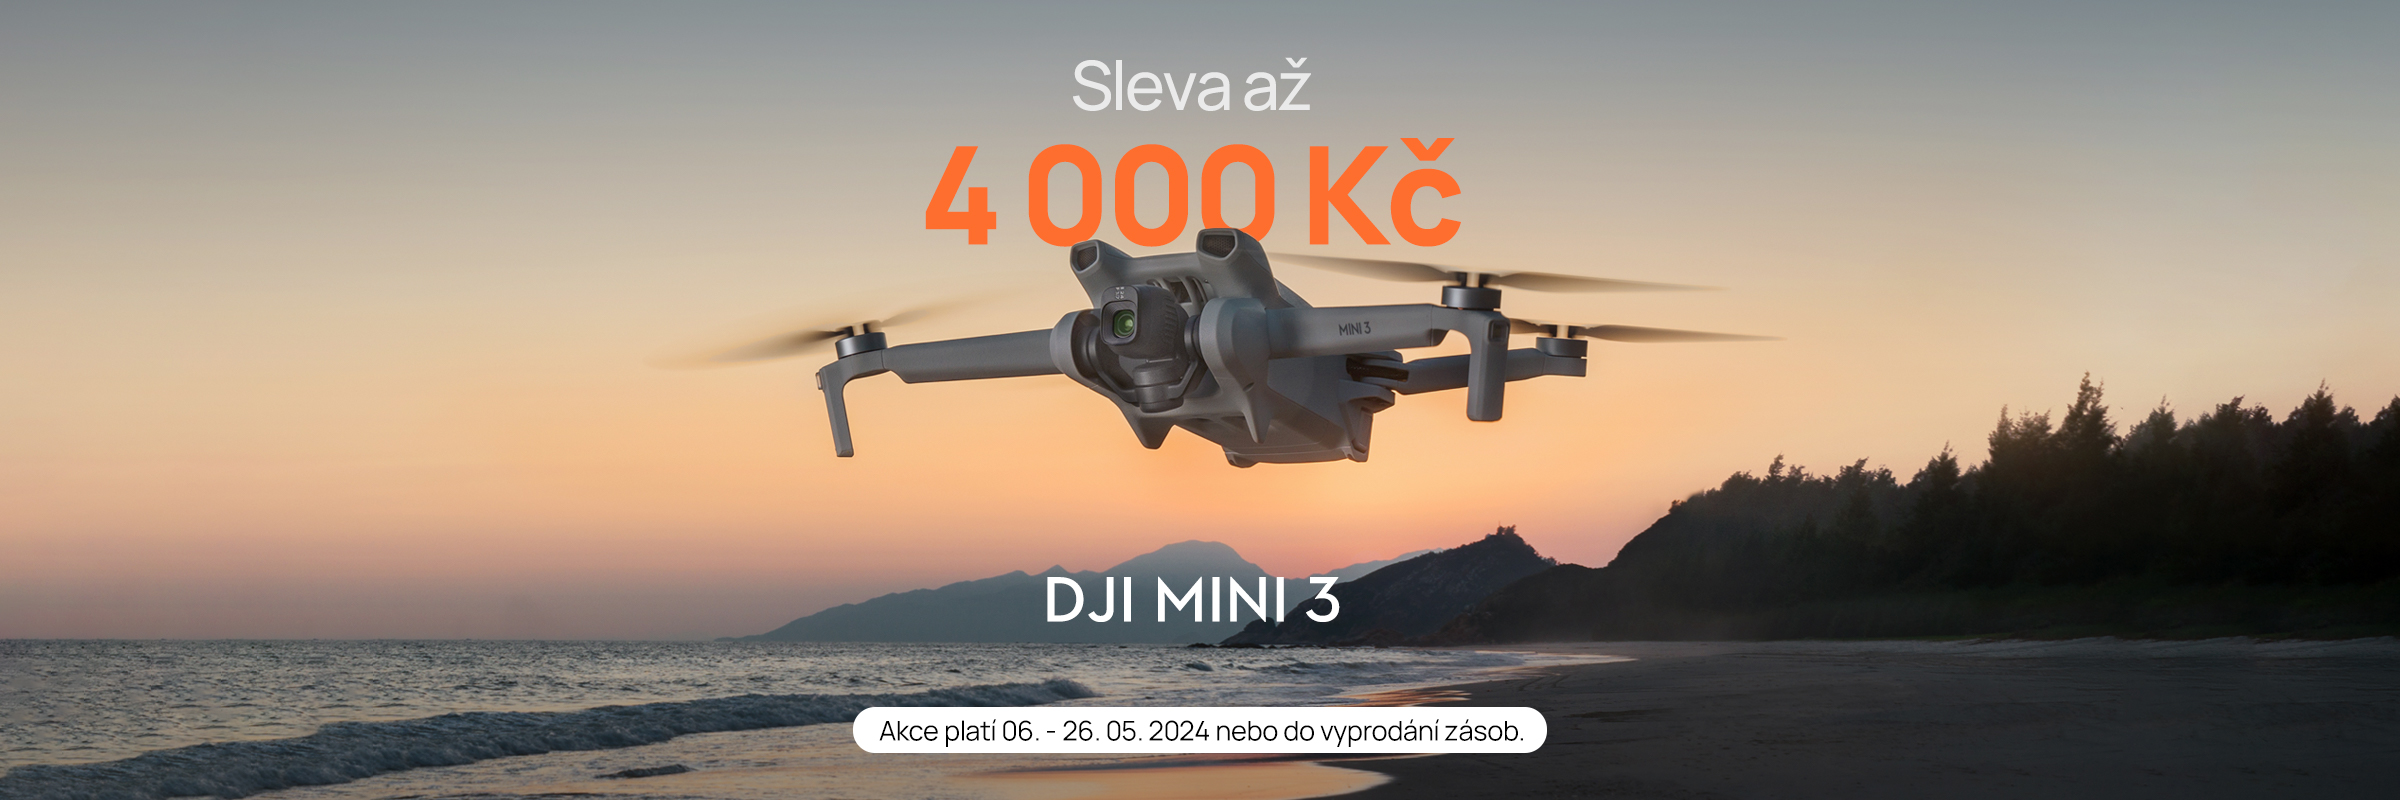 DJI Mini 3 - sleva až 4000 Kč